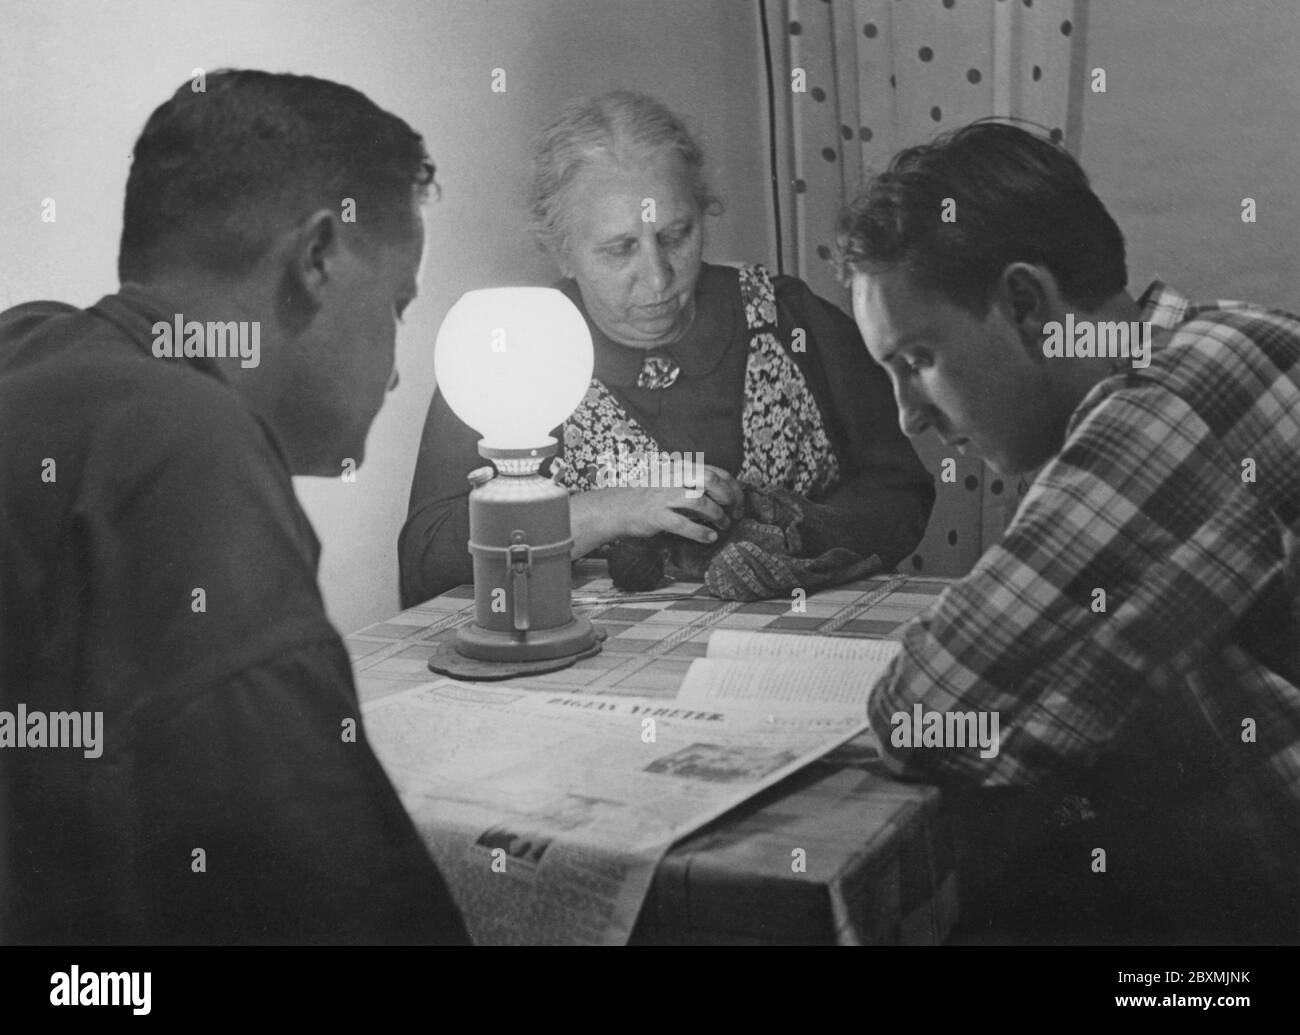 Dans les années 1940. Une femme âgée et deux jeunes hommes trient et lisent à la lumière d'une lampe en carbure. Lampe qui produit et brûle l'acétylène, créée par la réaction chimique du carbure de calcium et de l'eau. Suède 1942 Banque D'Images